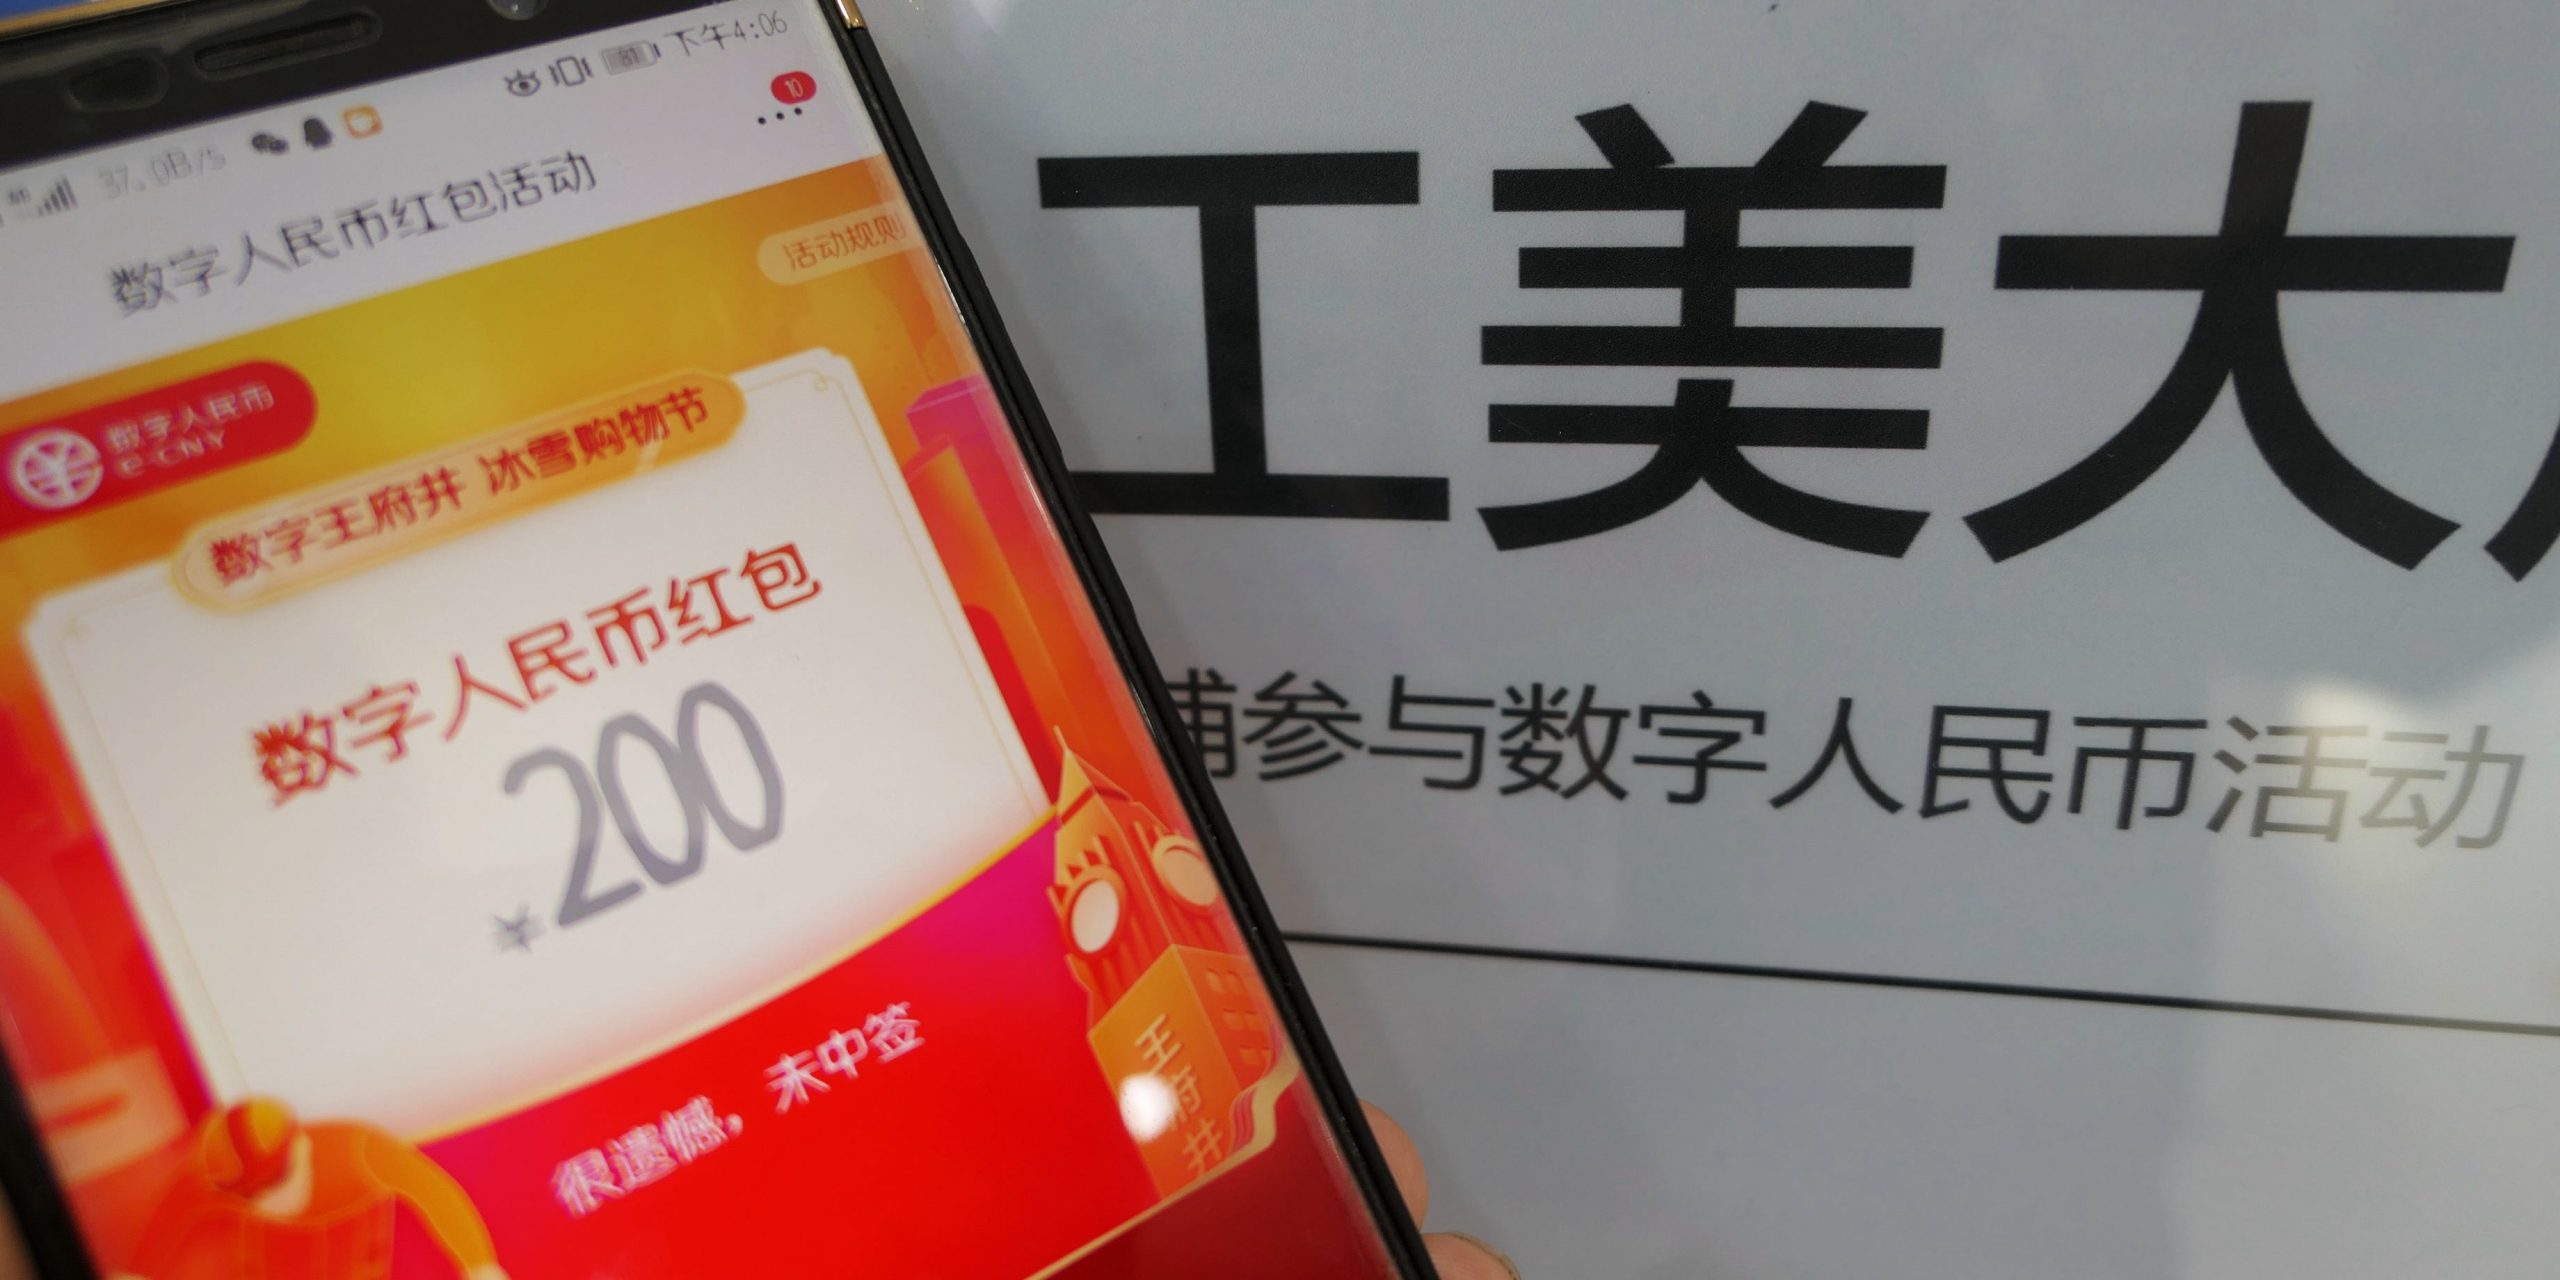 Digital yuan red envelope